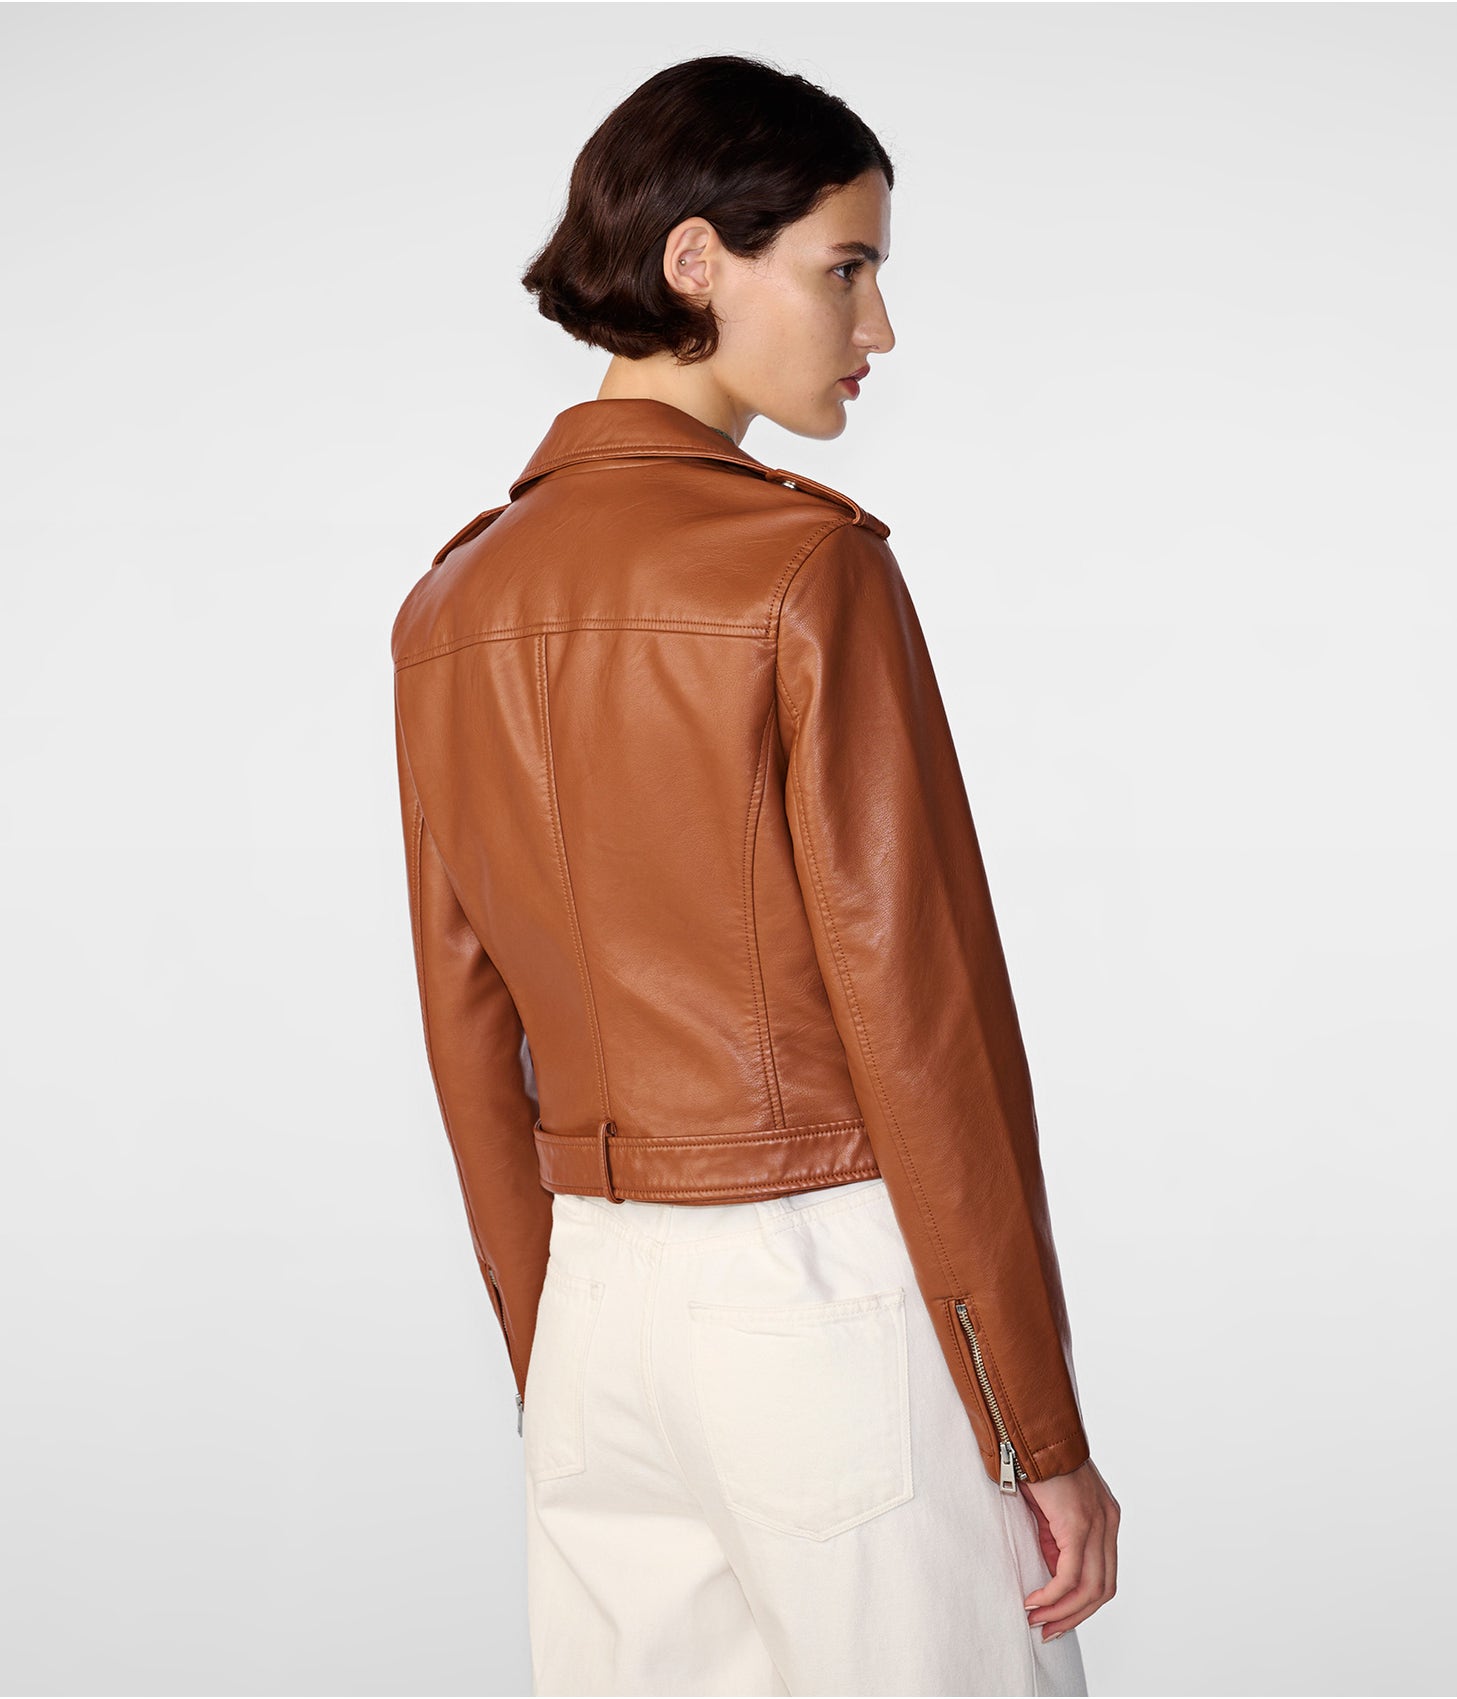 Women's Biker Leather Jacket | Custom Jackets